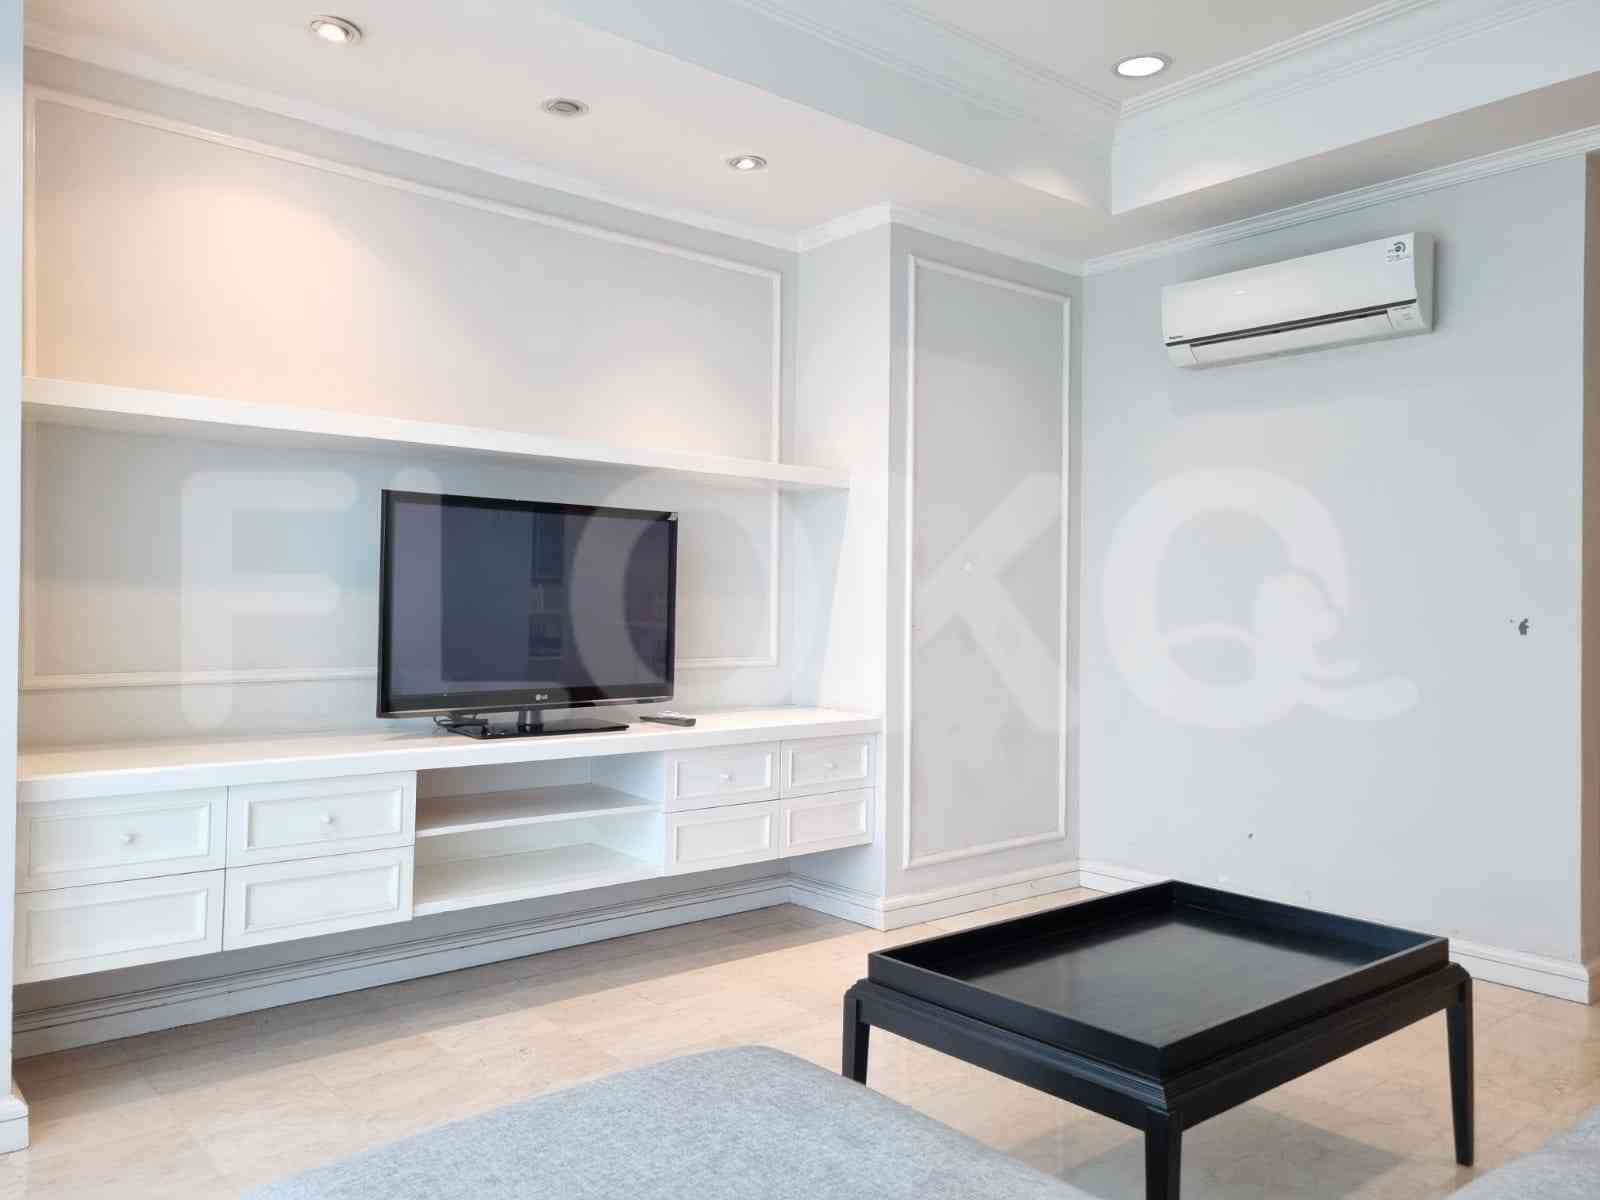 3 Bedroom on 15th Floor for Rent in Puri Imperium Apartment - fkub6e 8